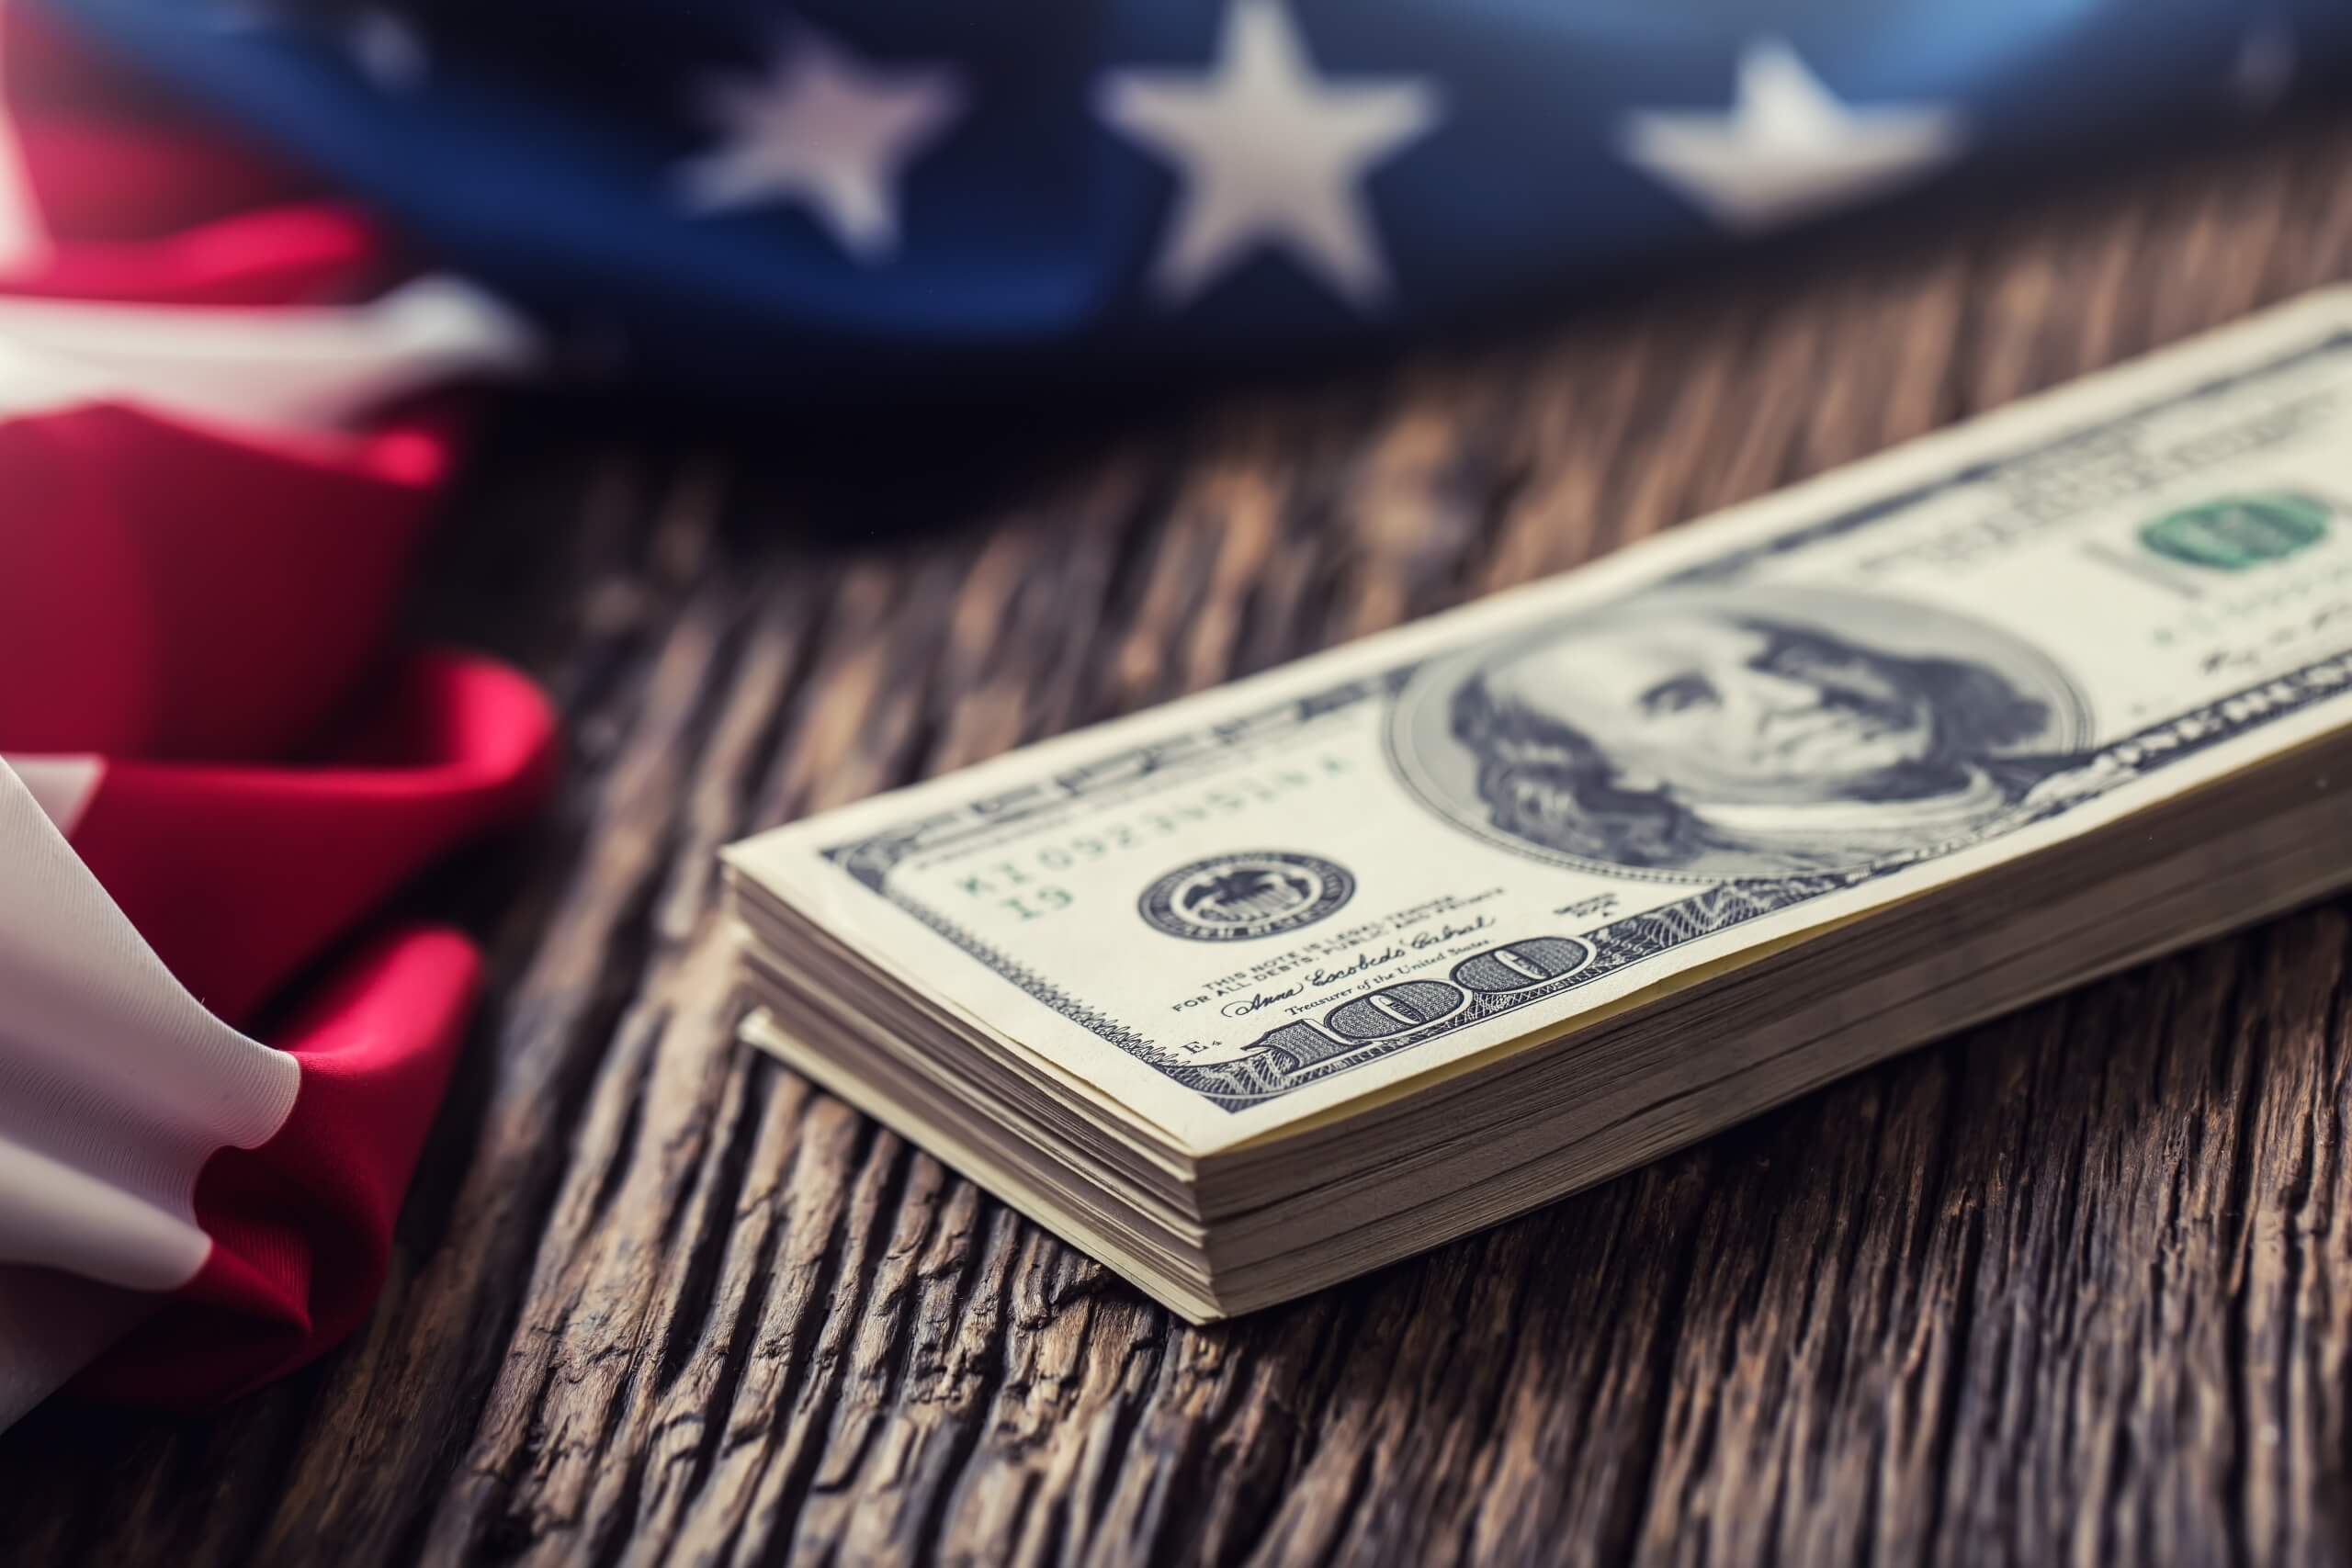  Dólares americanos una bandera de Estados Unidos.Primer plano de la bandera estadounidense y dinero en efectivo en dólares en madera de roble viejo.